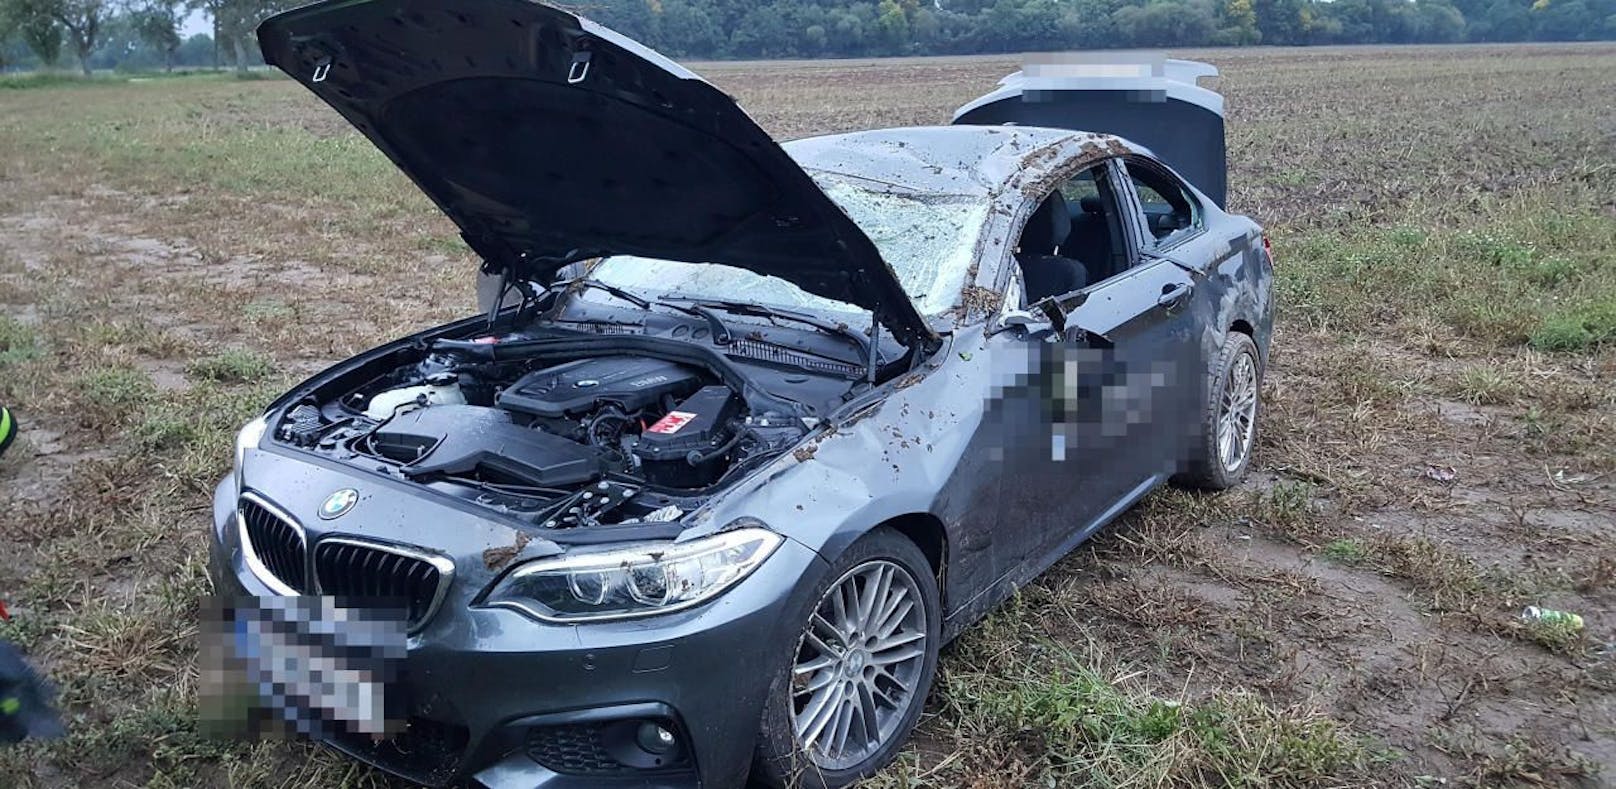 BMW landete nach Überschlag im Acker